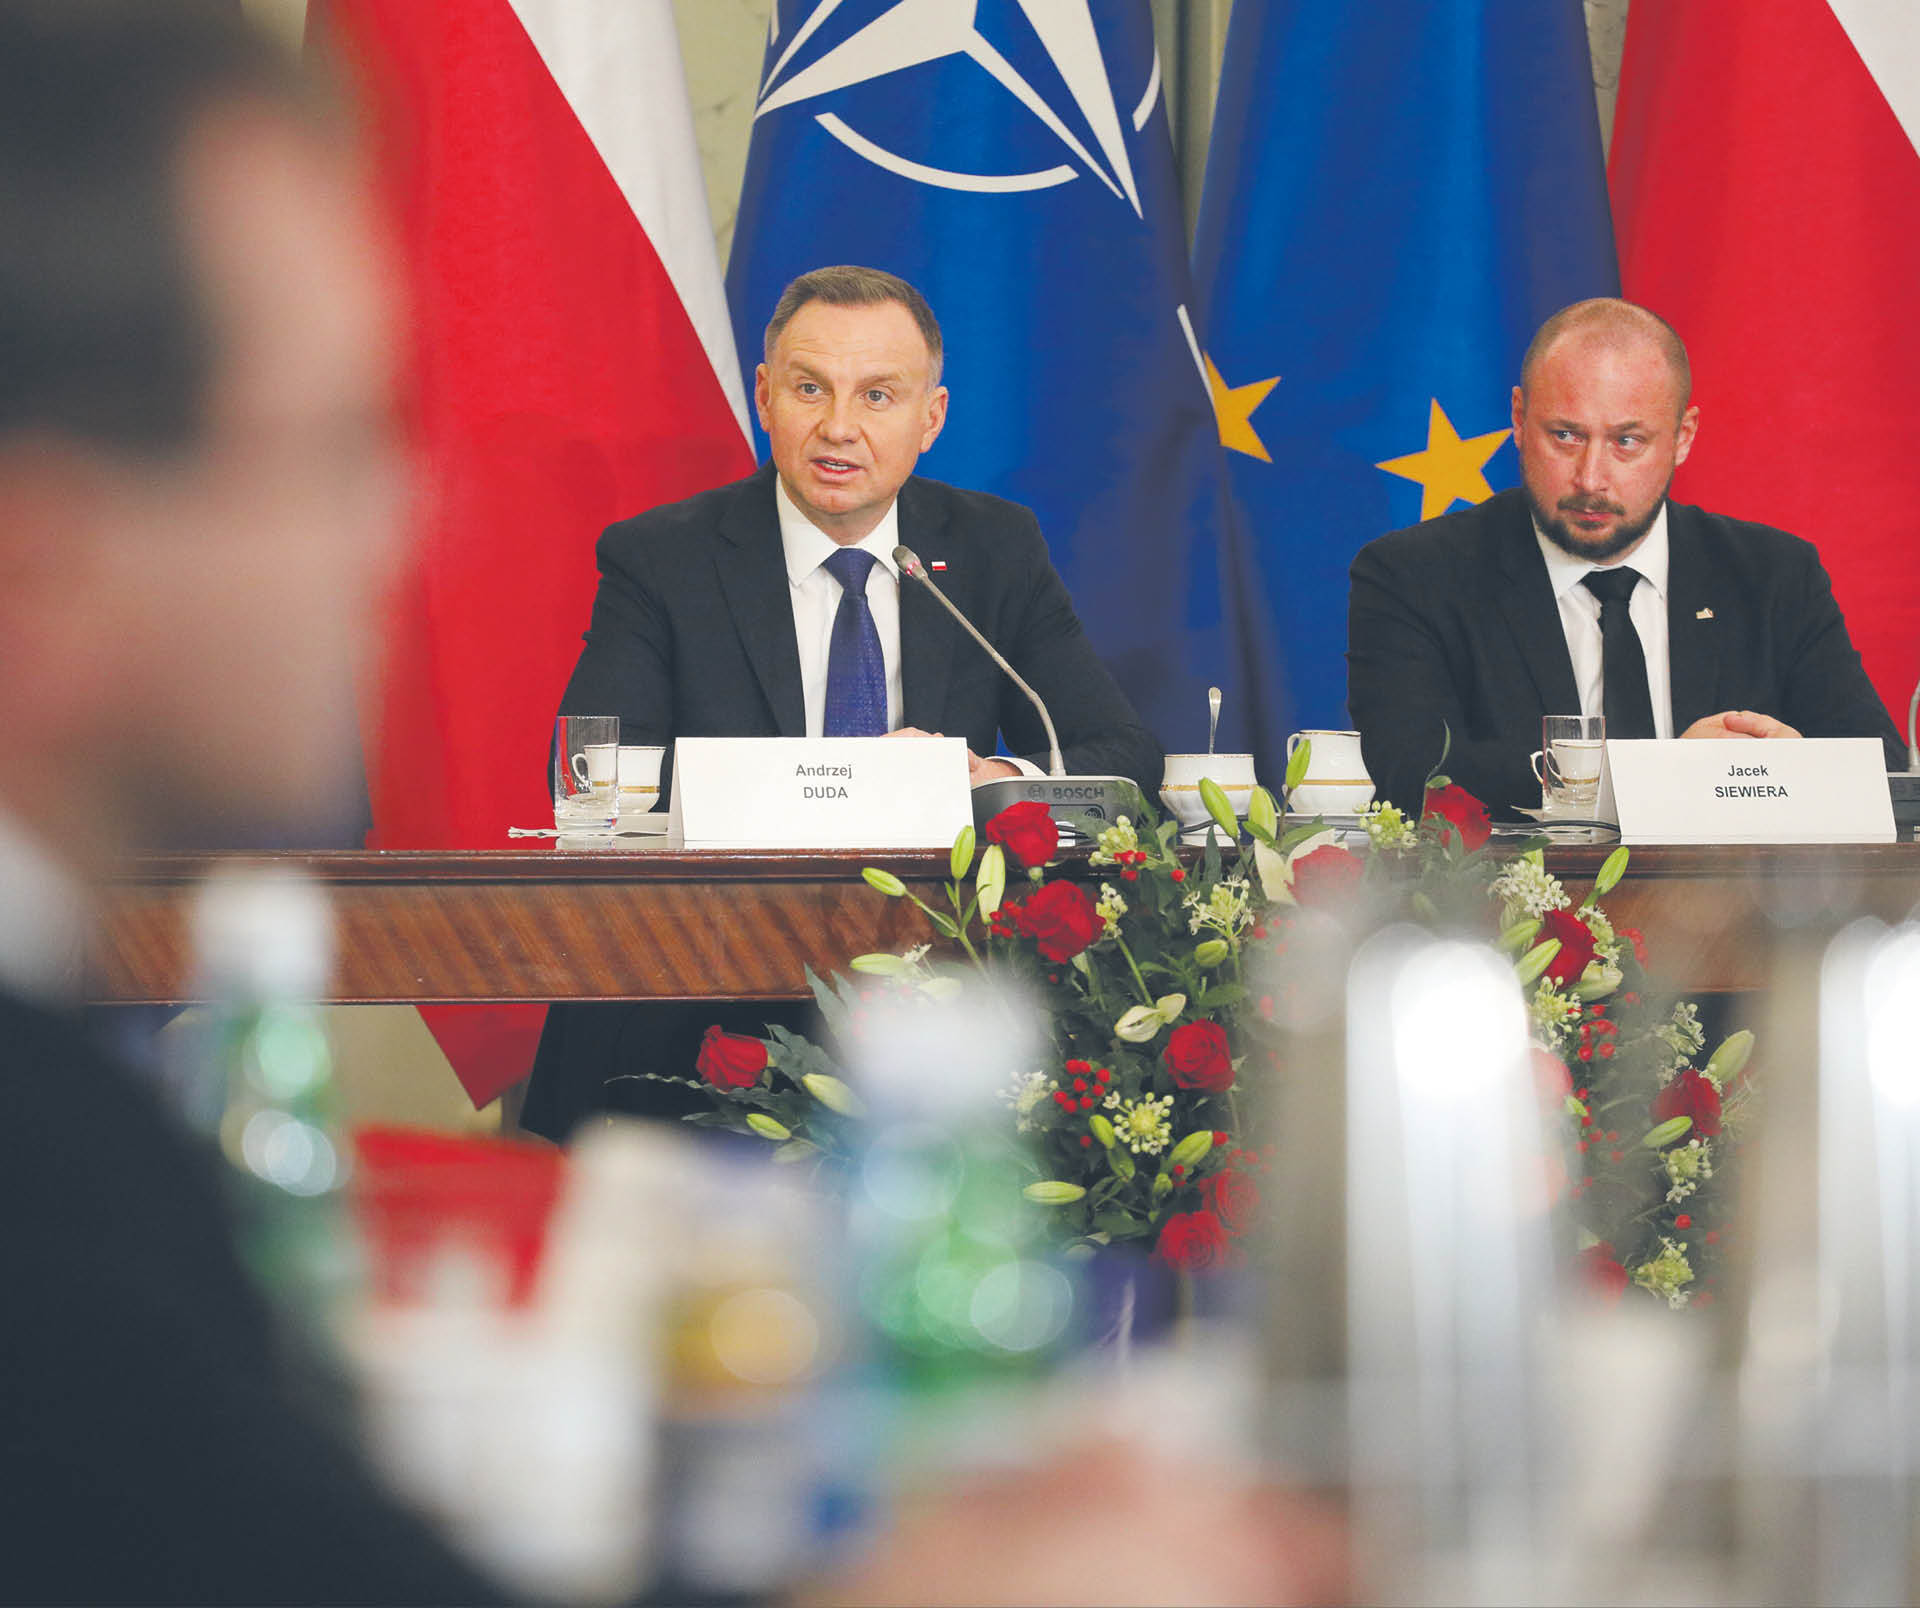 Środa, posiedzenie Rady Bezpieczeństwa Narodowego; obok prezydenta Andrzeja Dudy szef BBN Jacek Siewiera